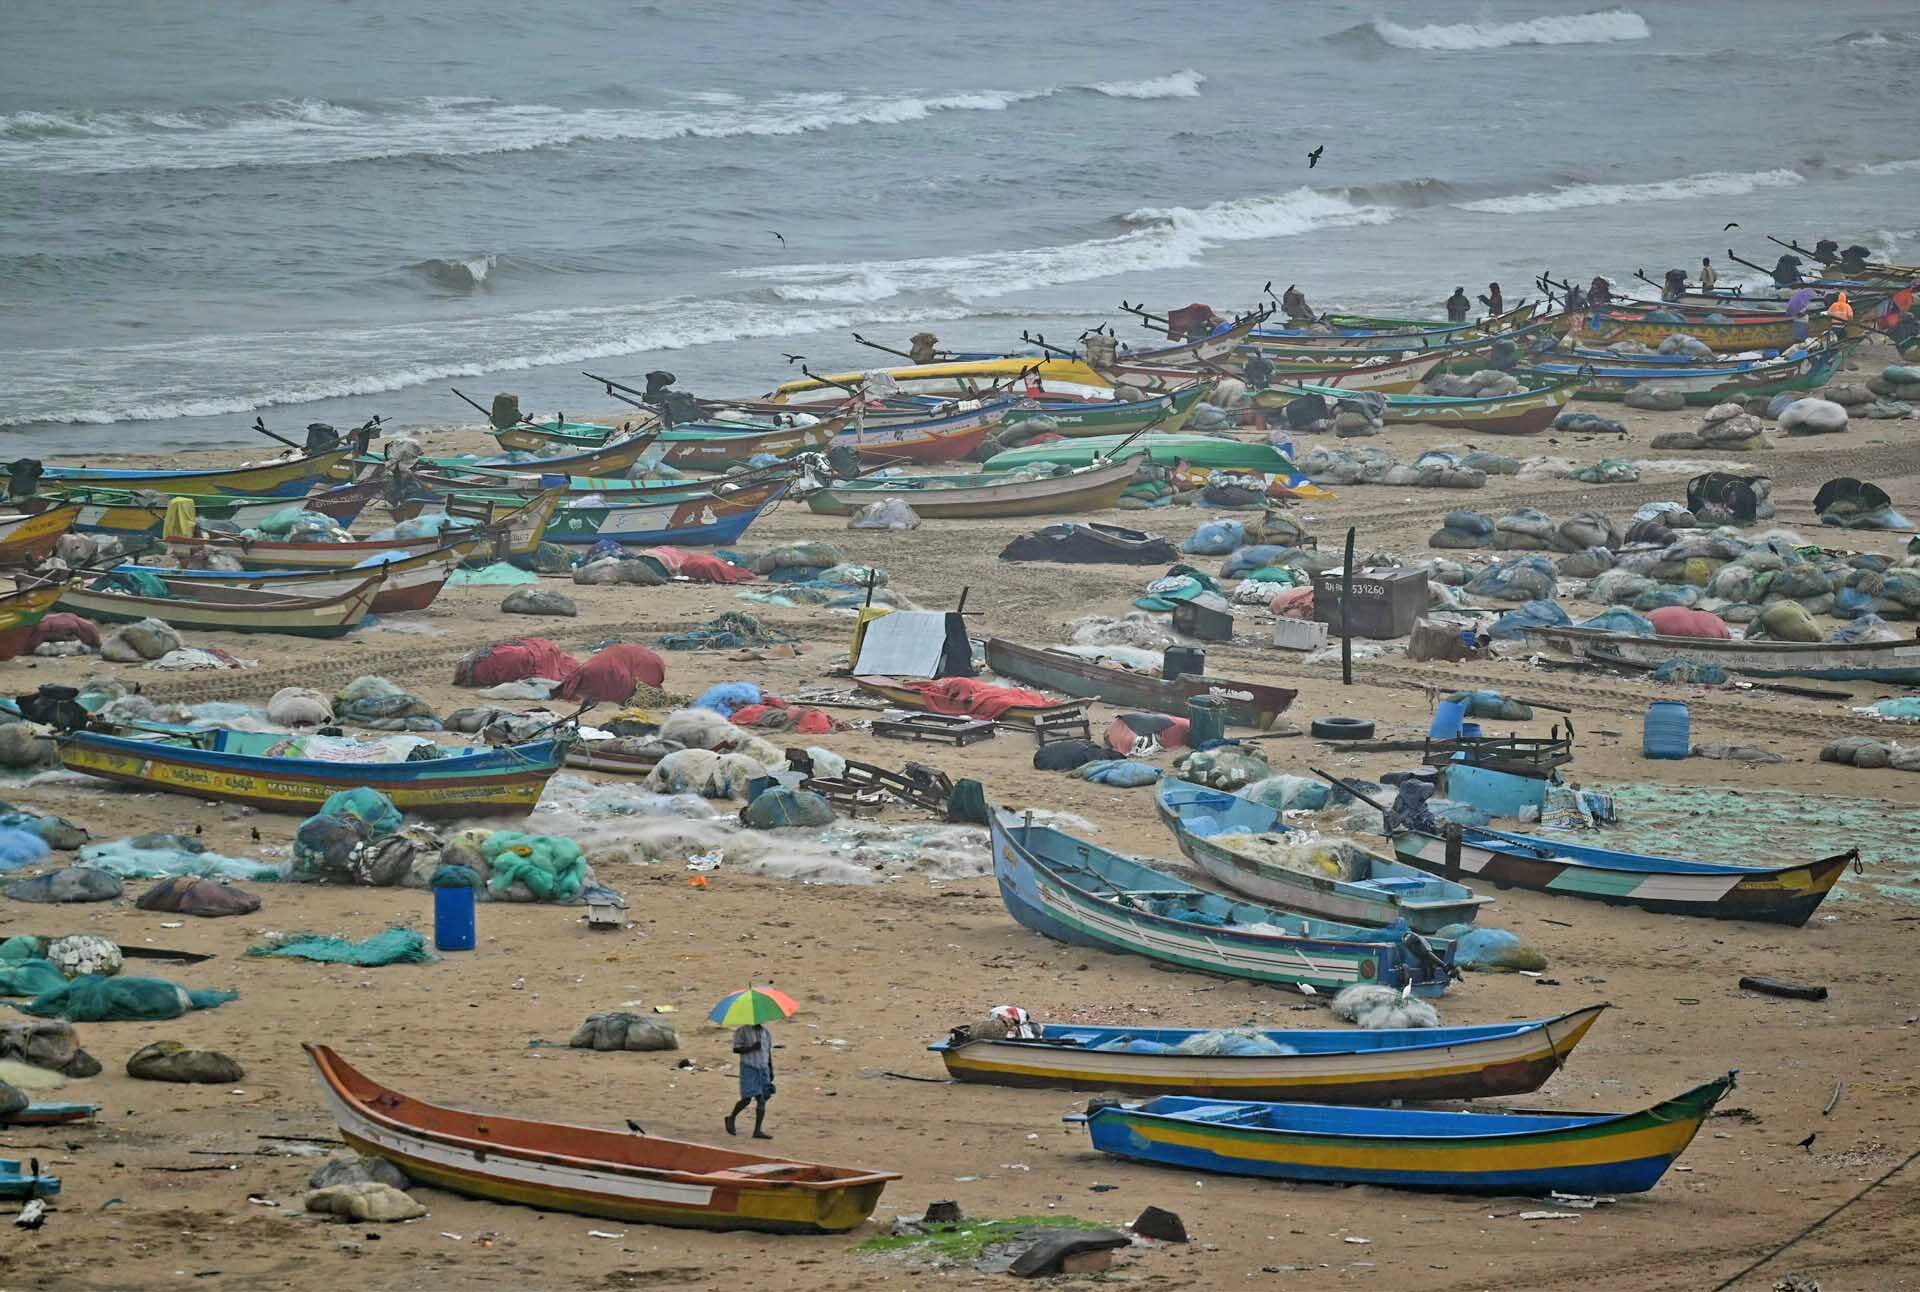 พายุฝนถล่มอินเดีย “ฟ้าผ่าคร่าหมู่” สังเวยแล้ว 24 ราย-ได้รับบาดเจ็บอีกหลายสิบคน